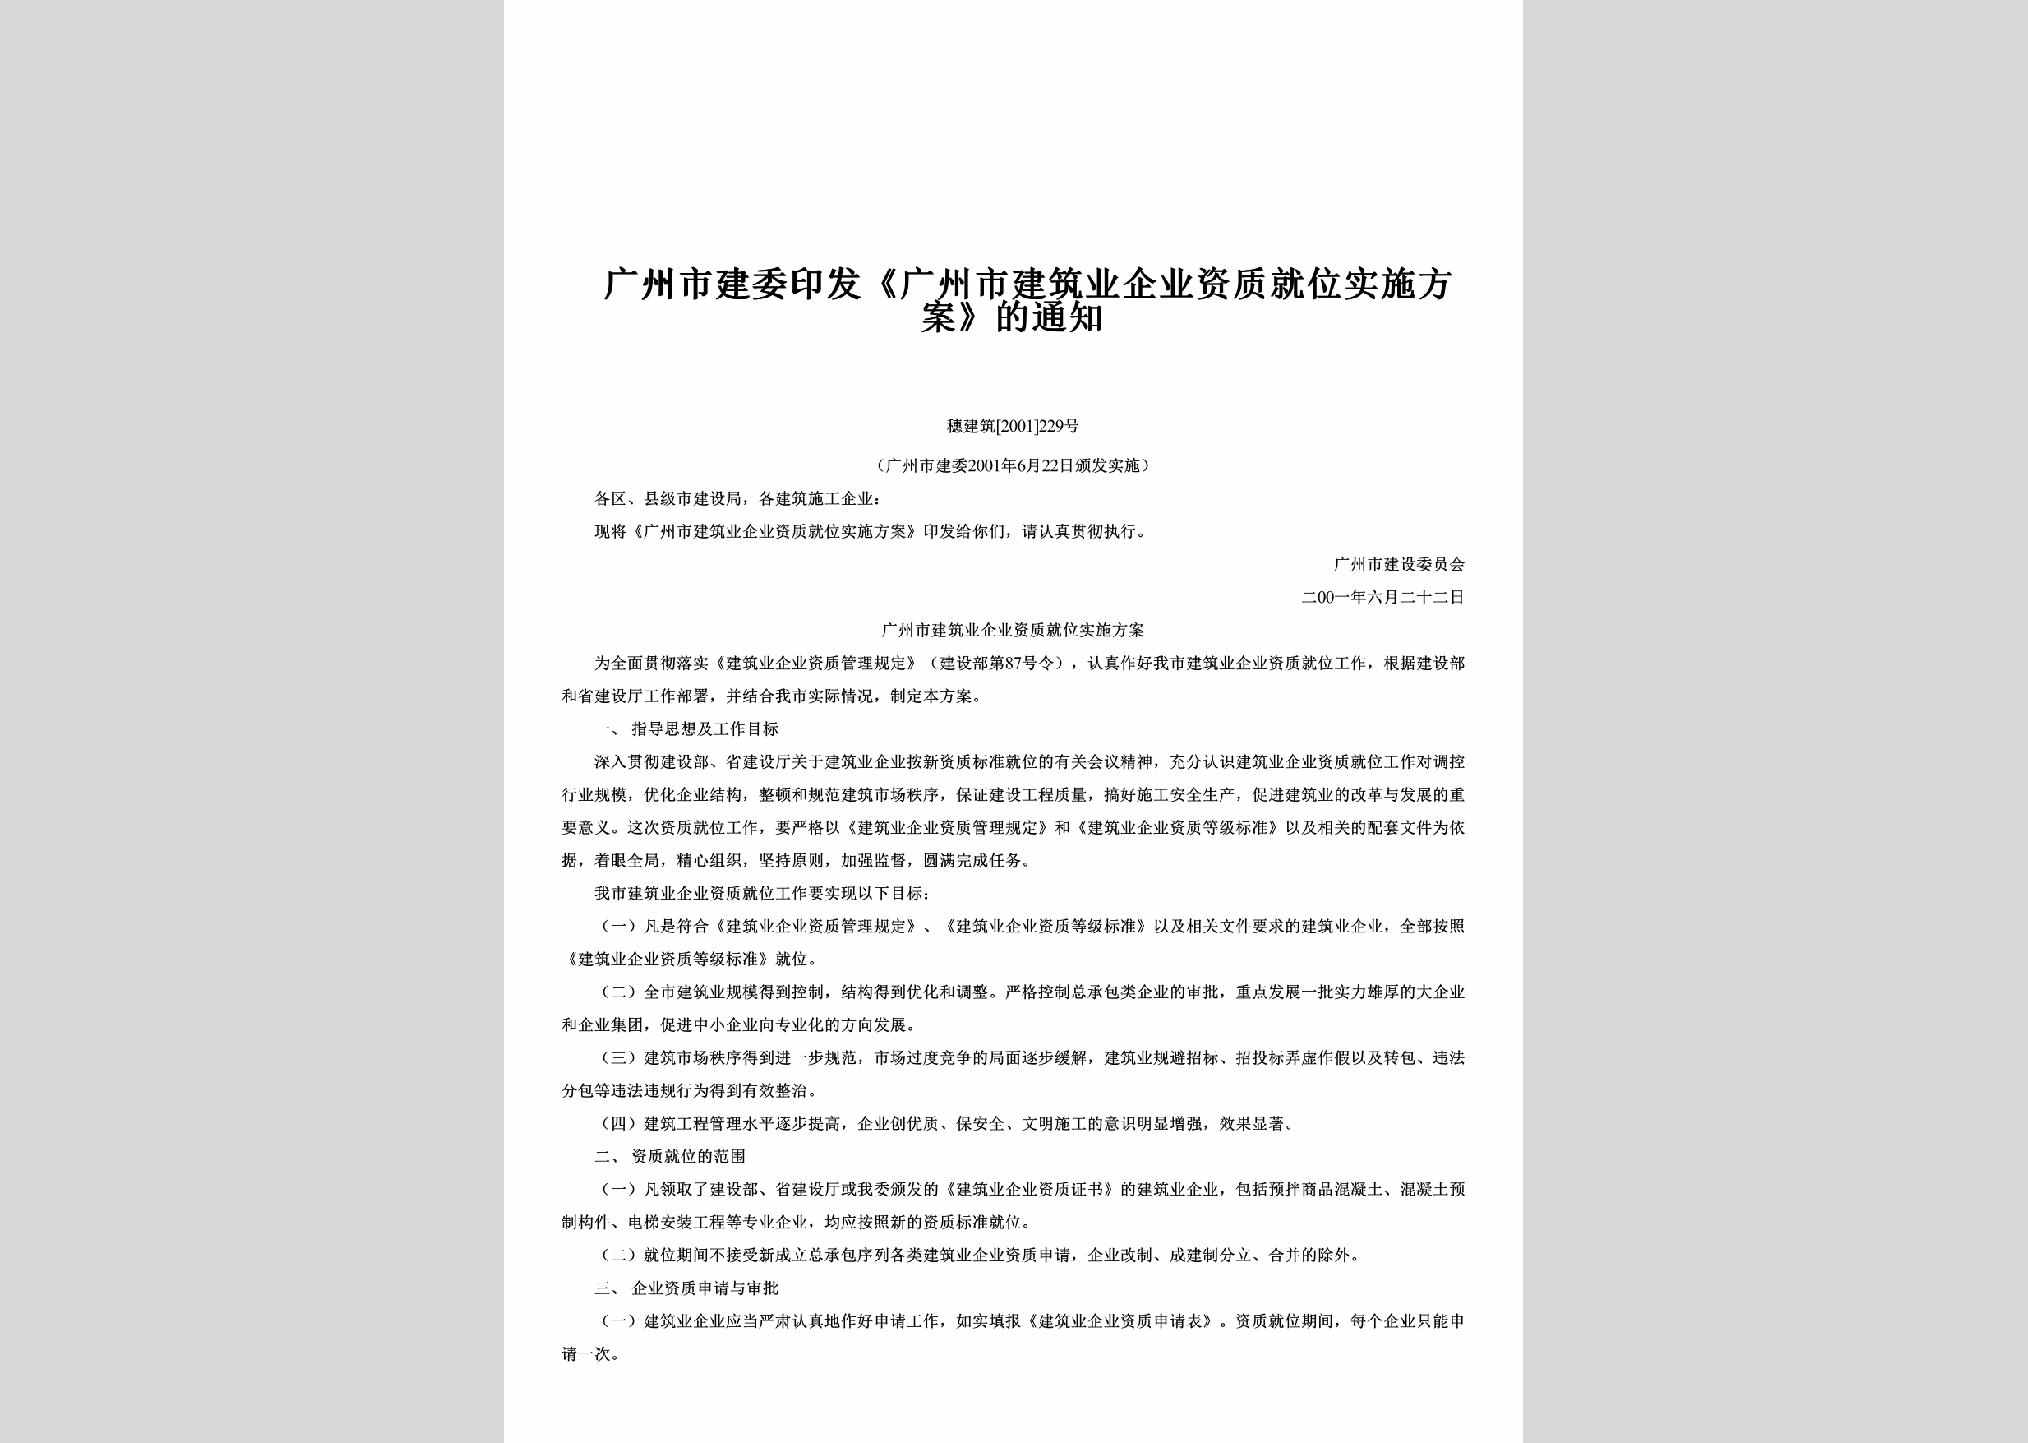 穗建筑[2001]229号：印发《广州市建筑业企业资质就位实施方案》的通知